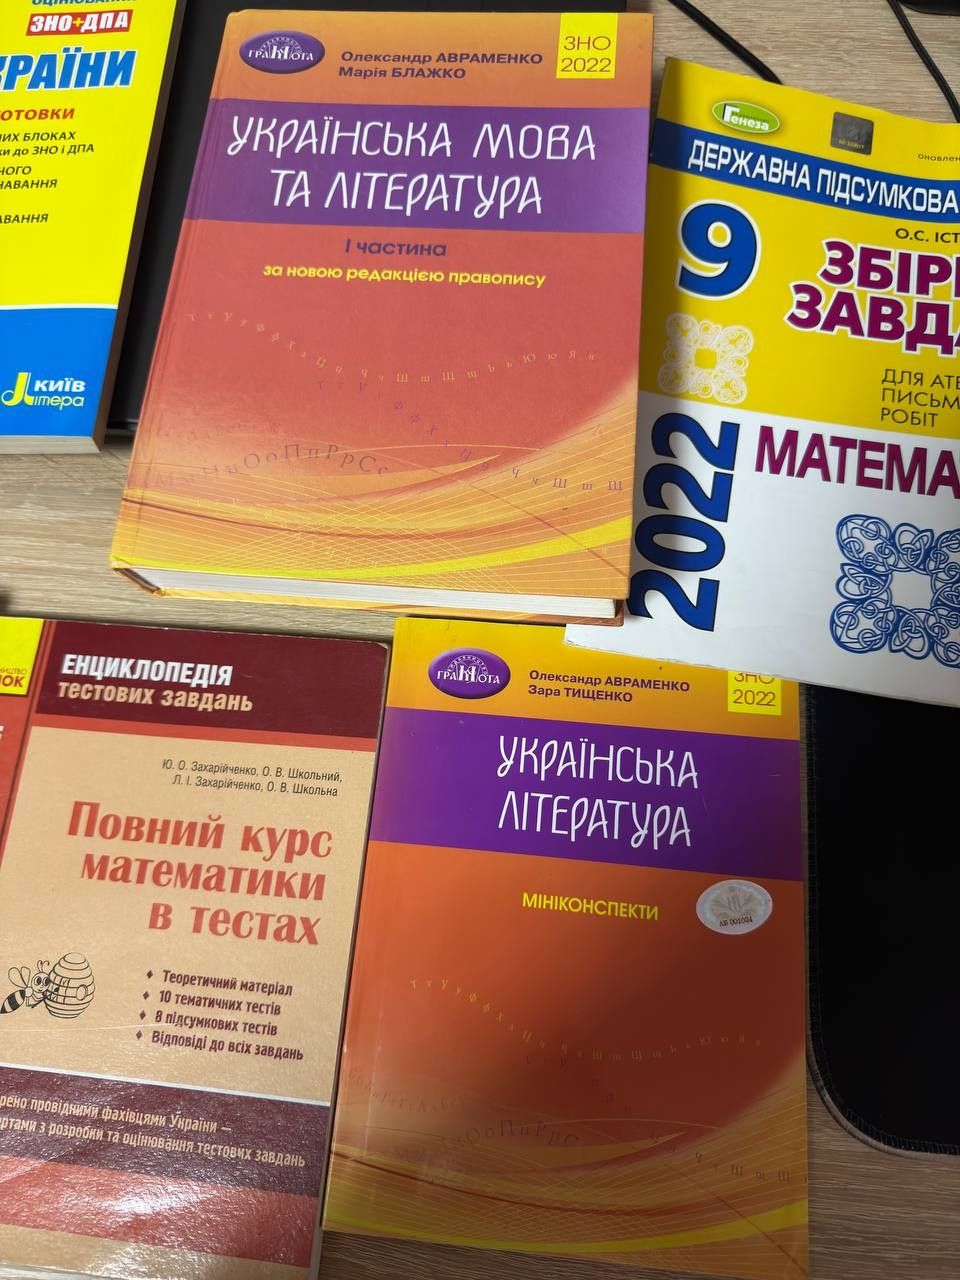 Посібники для підготовки НМТ ЗНО,математика,українська,біологія,історі